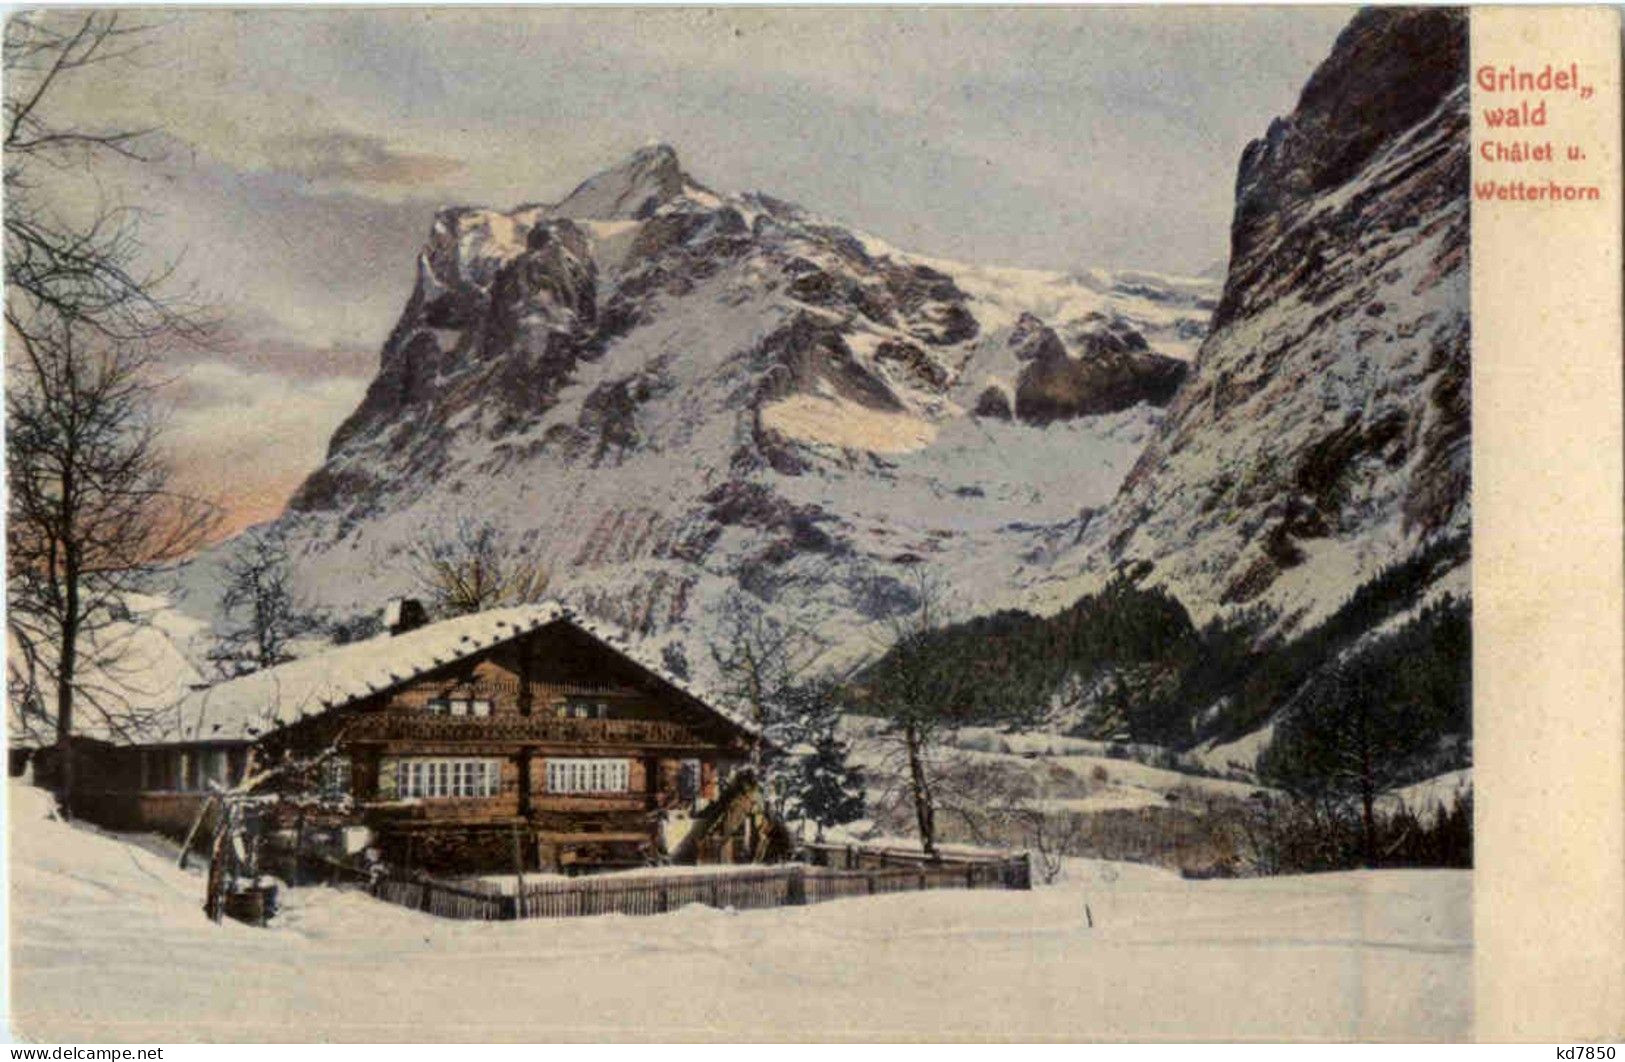 Grindelwald - Chalet - Grindelwald